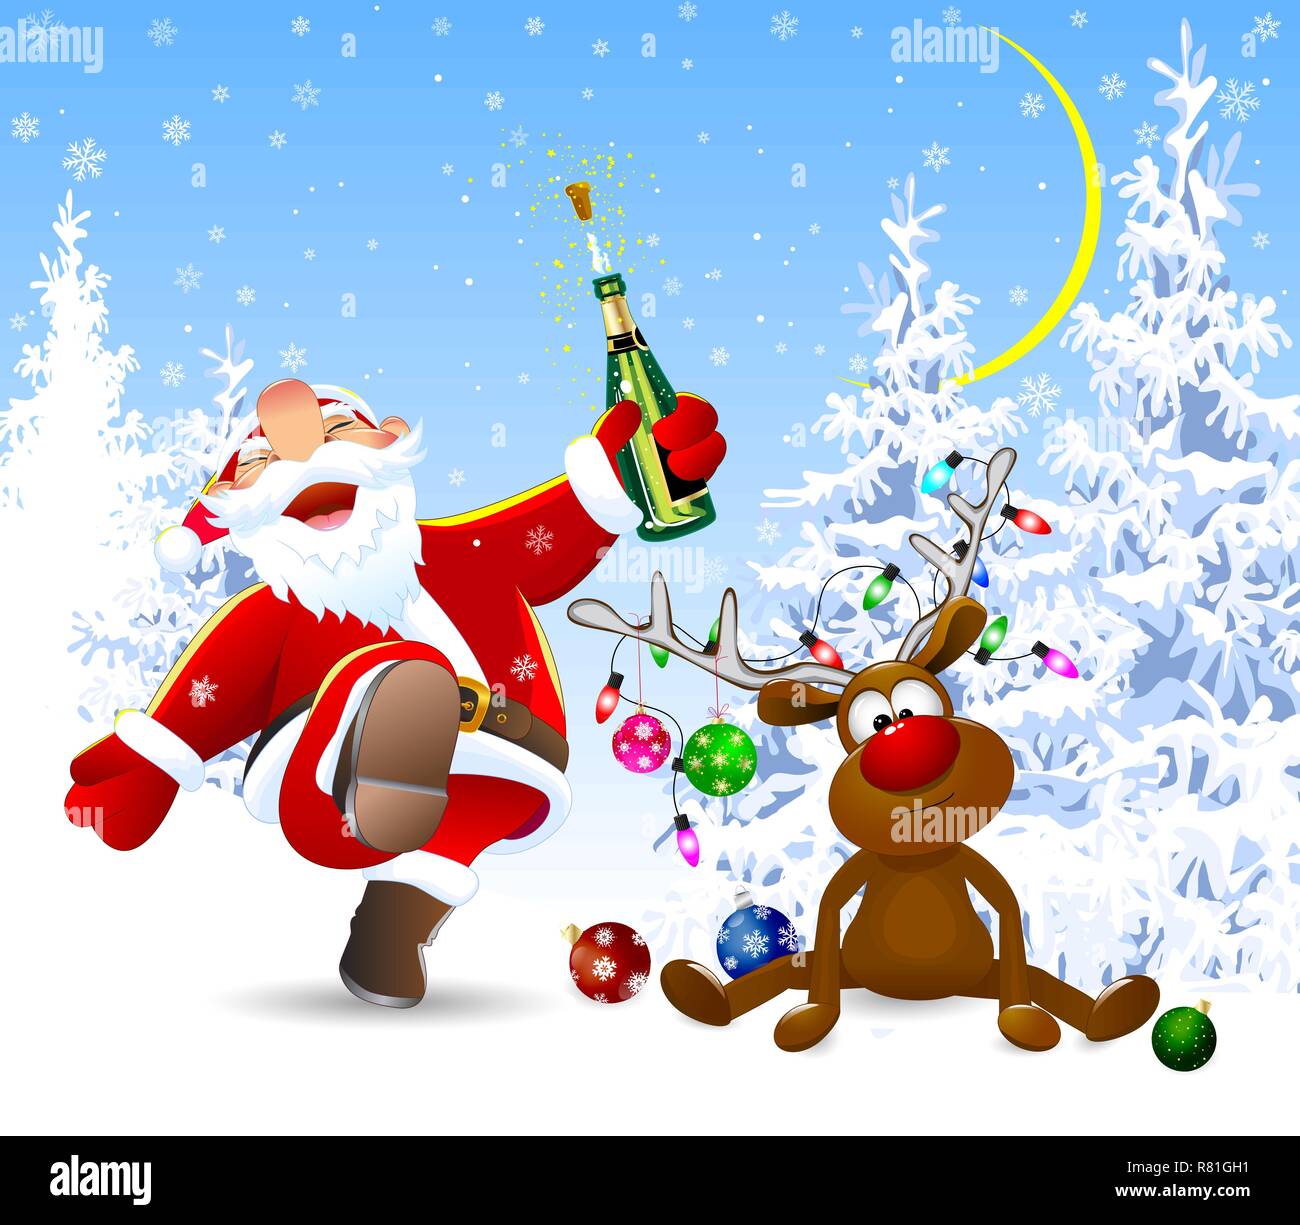 Santa Claus con una botella en su mano. Un ciervo decorado con bolas de Navidad, una guirnalda de luces y un arco. Bosque de invierno. Ilustración del Vector